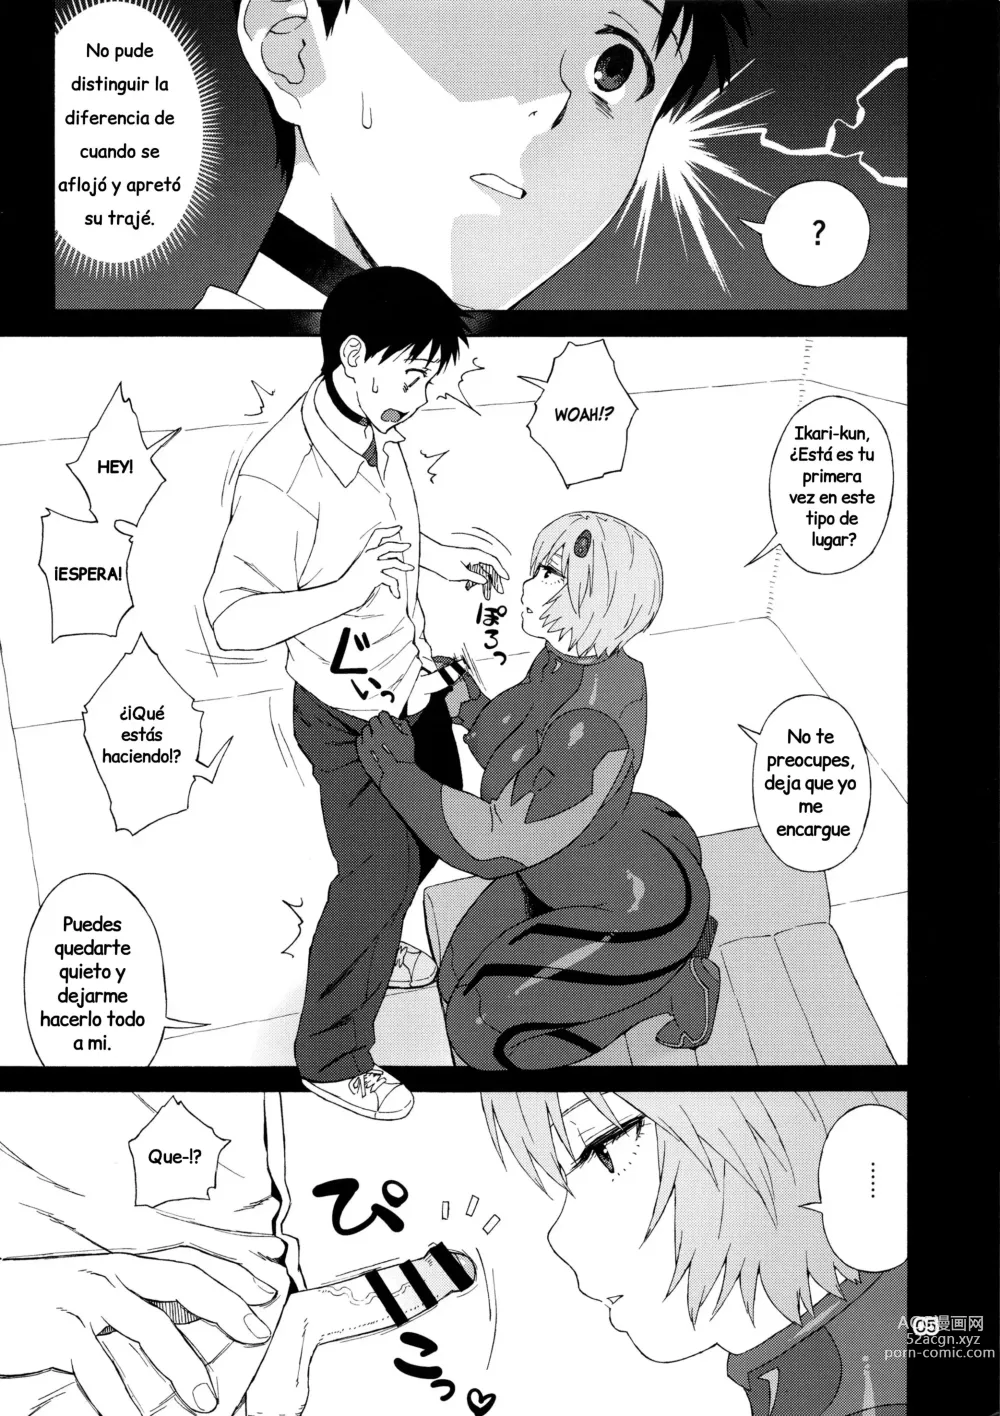 Page 5 of doujinshi Mi Ayanami (nombre temporal) no puede ser tan gorda